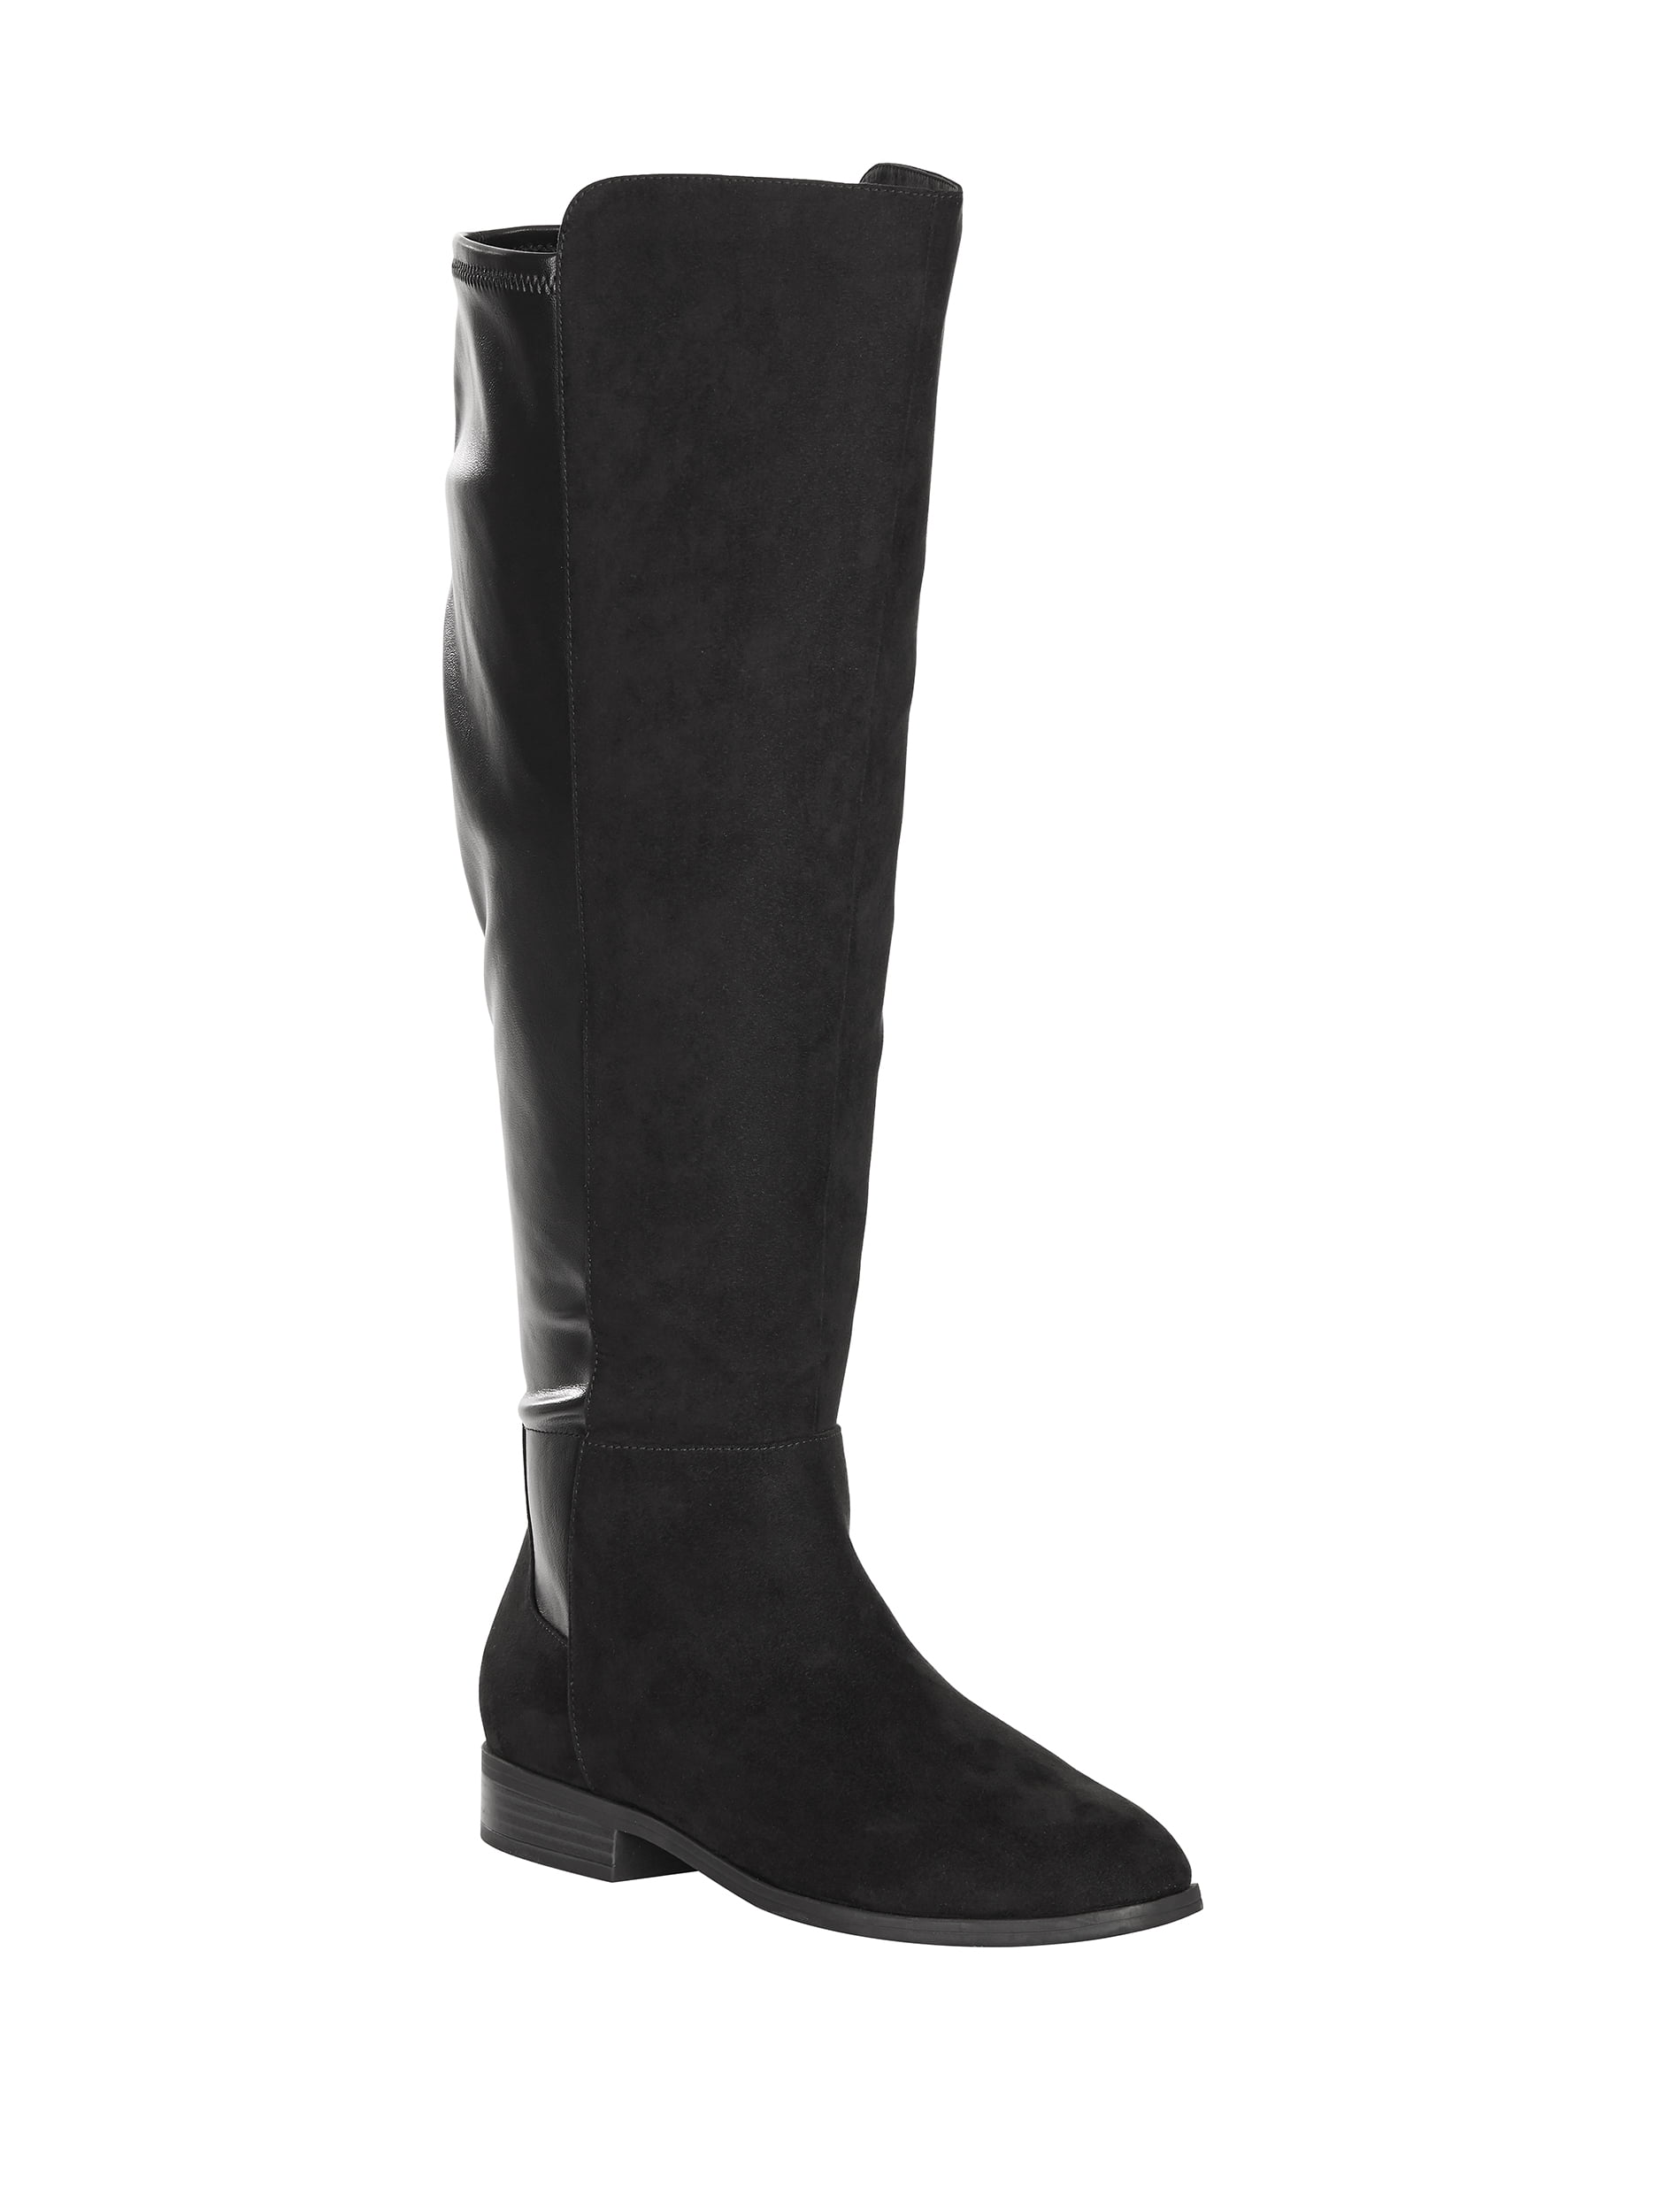 walmart womens boots wide width